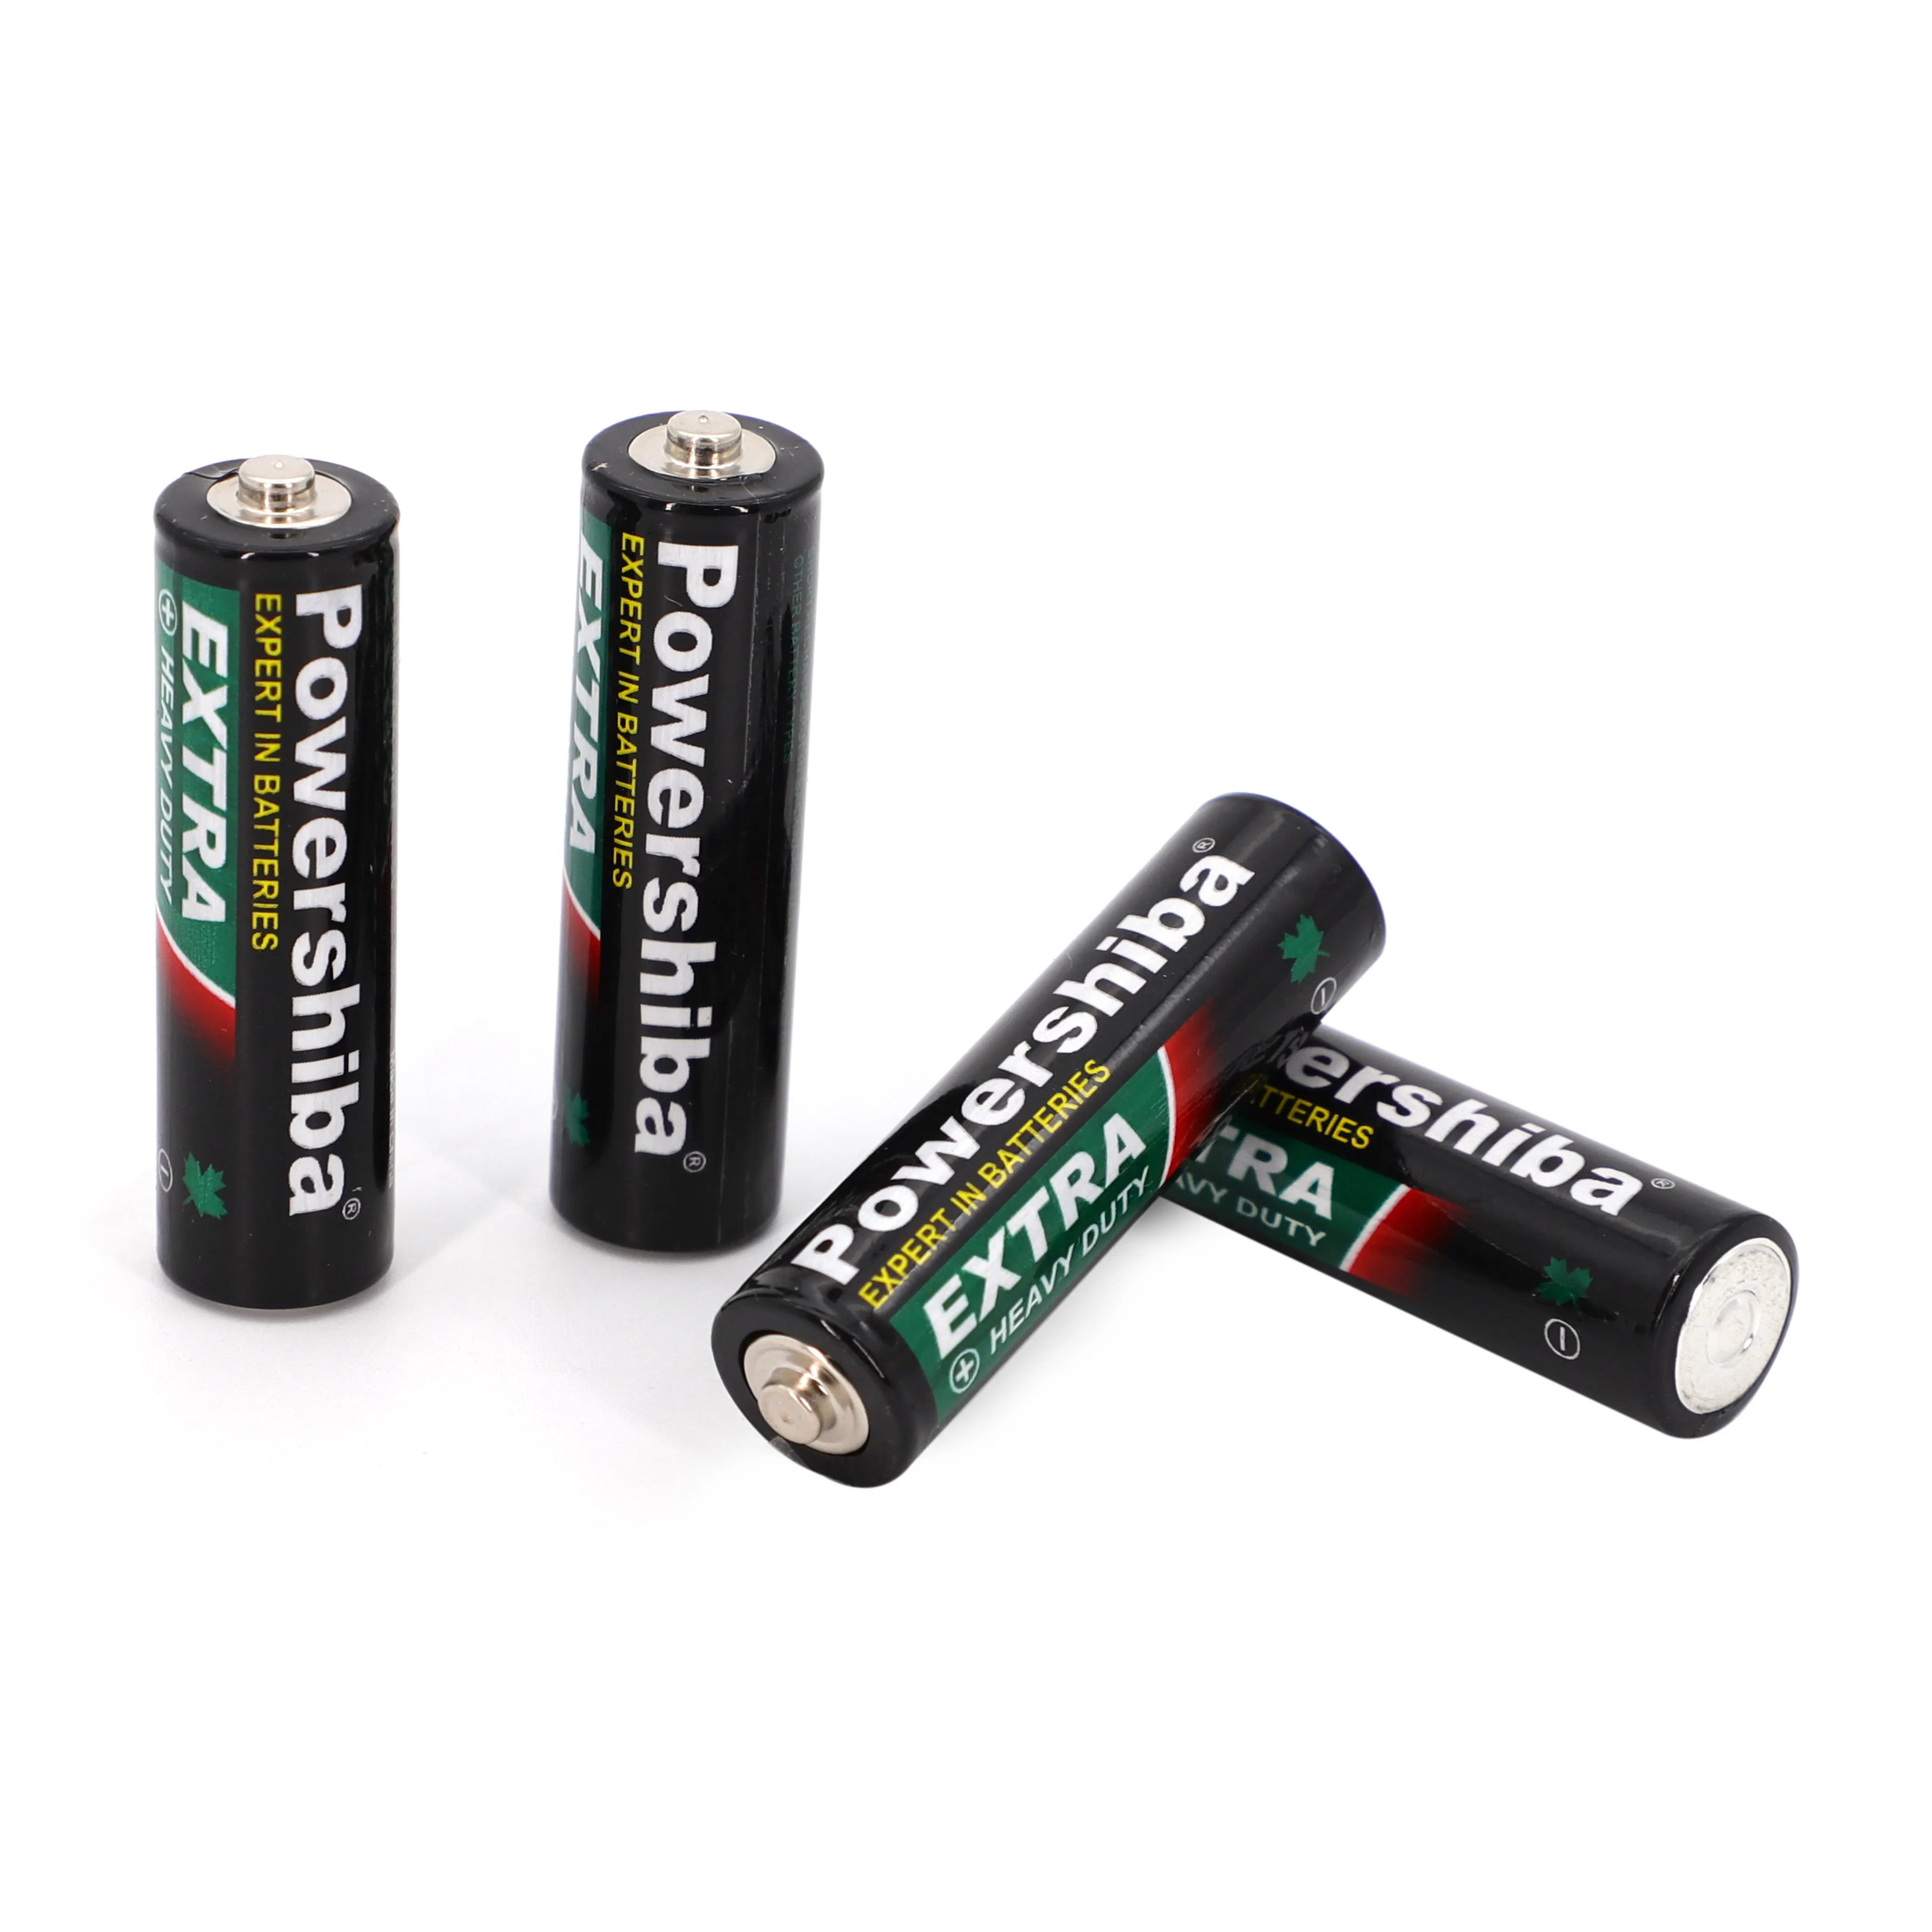 New long lasting powershiba R03 AAA carbon battery nominal volt 1.5V